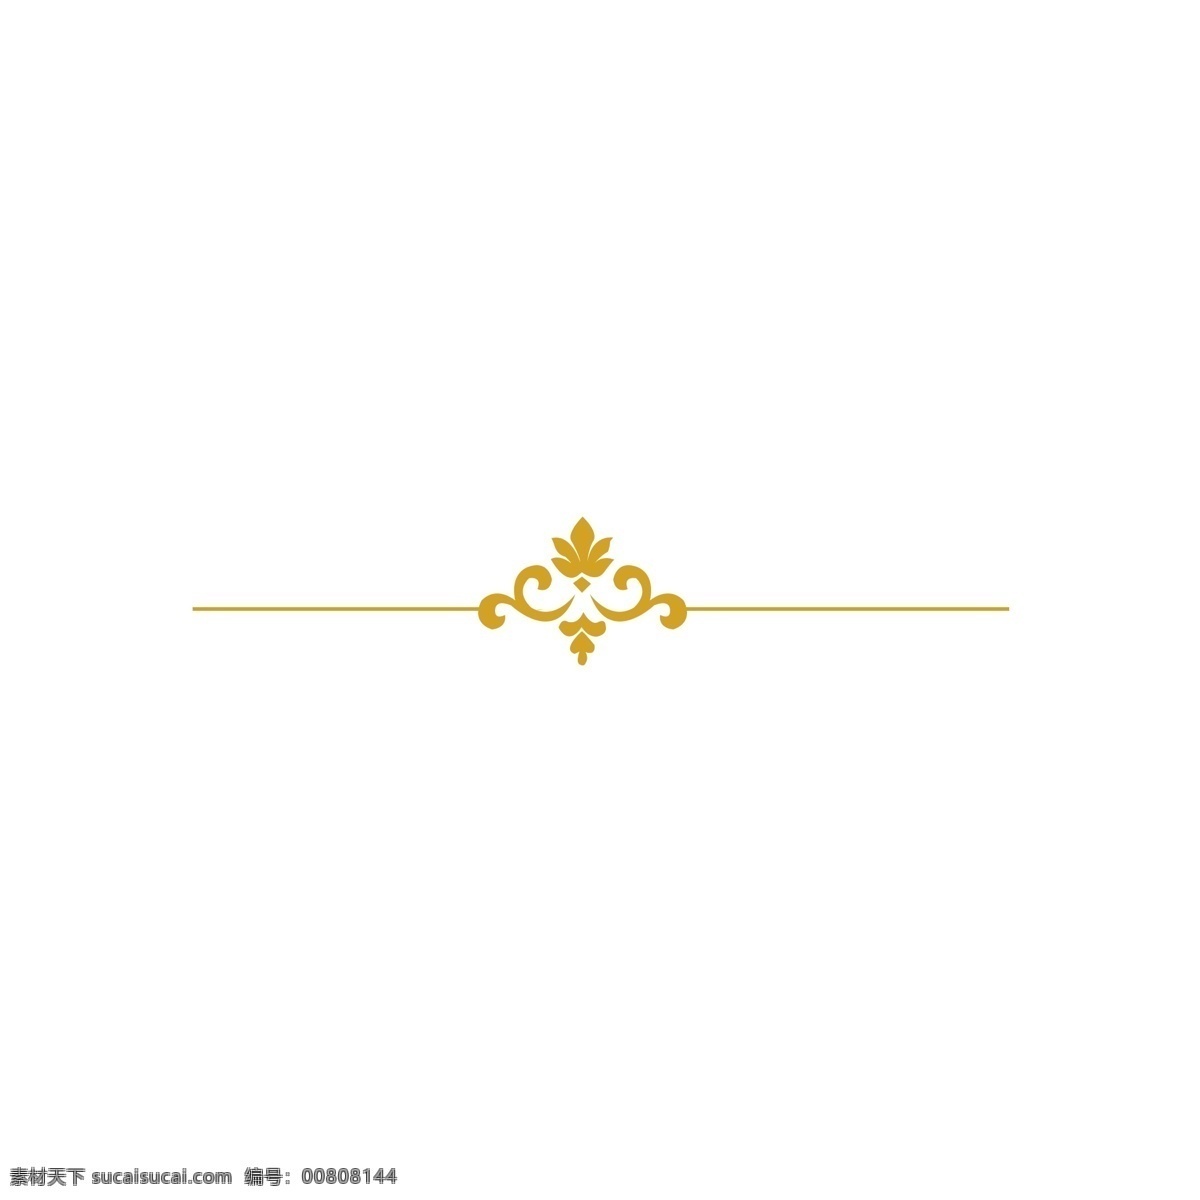 欧洲 复古 金色 装饰 纹理 欧式 黄色 传统 边框 边框金色 古典 简约 正方形 长方形 花纹纹理